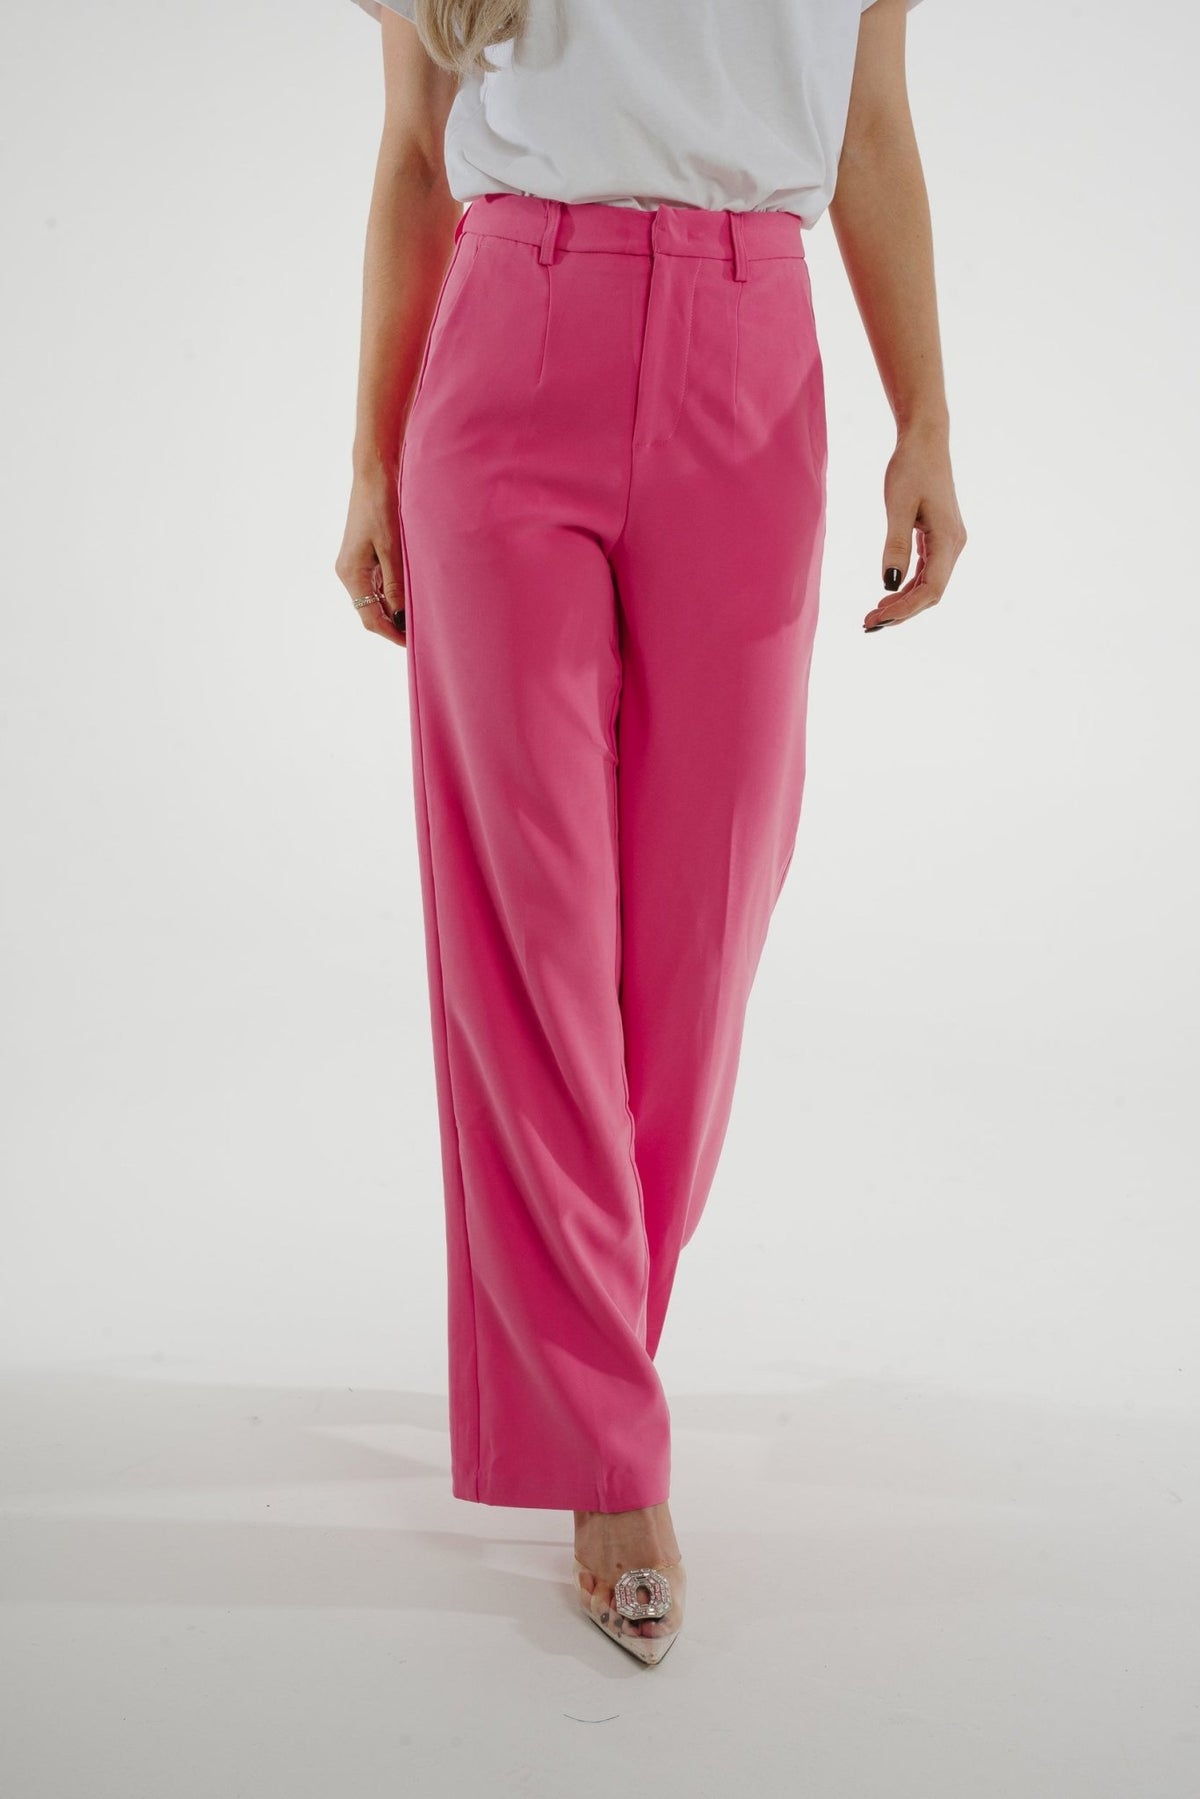 Freya Pleat Front Wide Leg Trouser In Pink - The Walk in Wardrobe